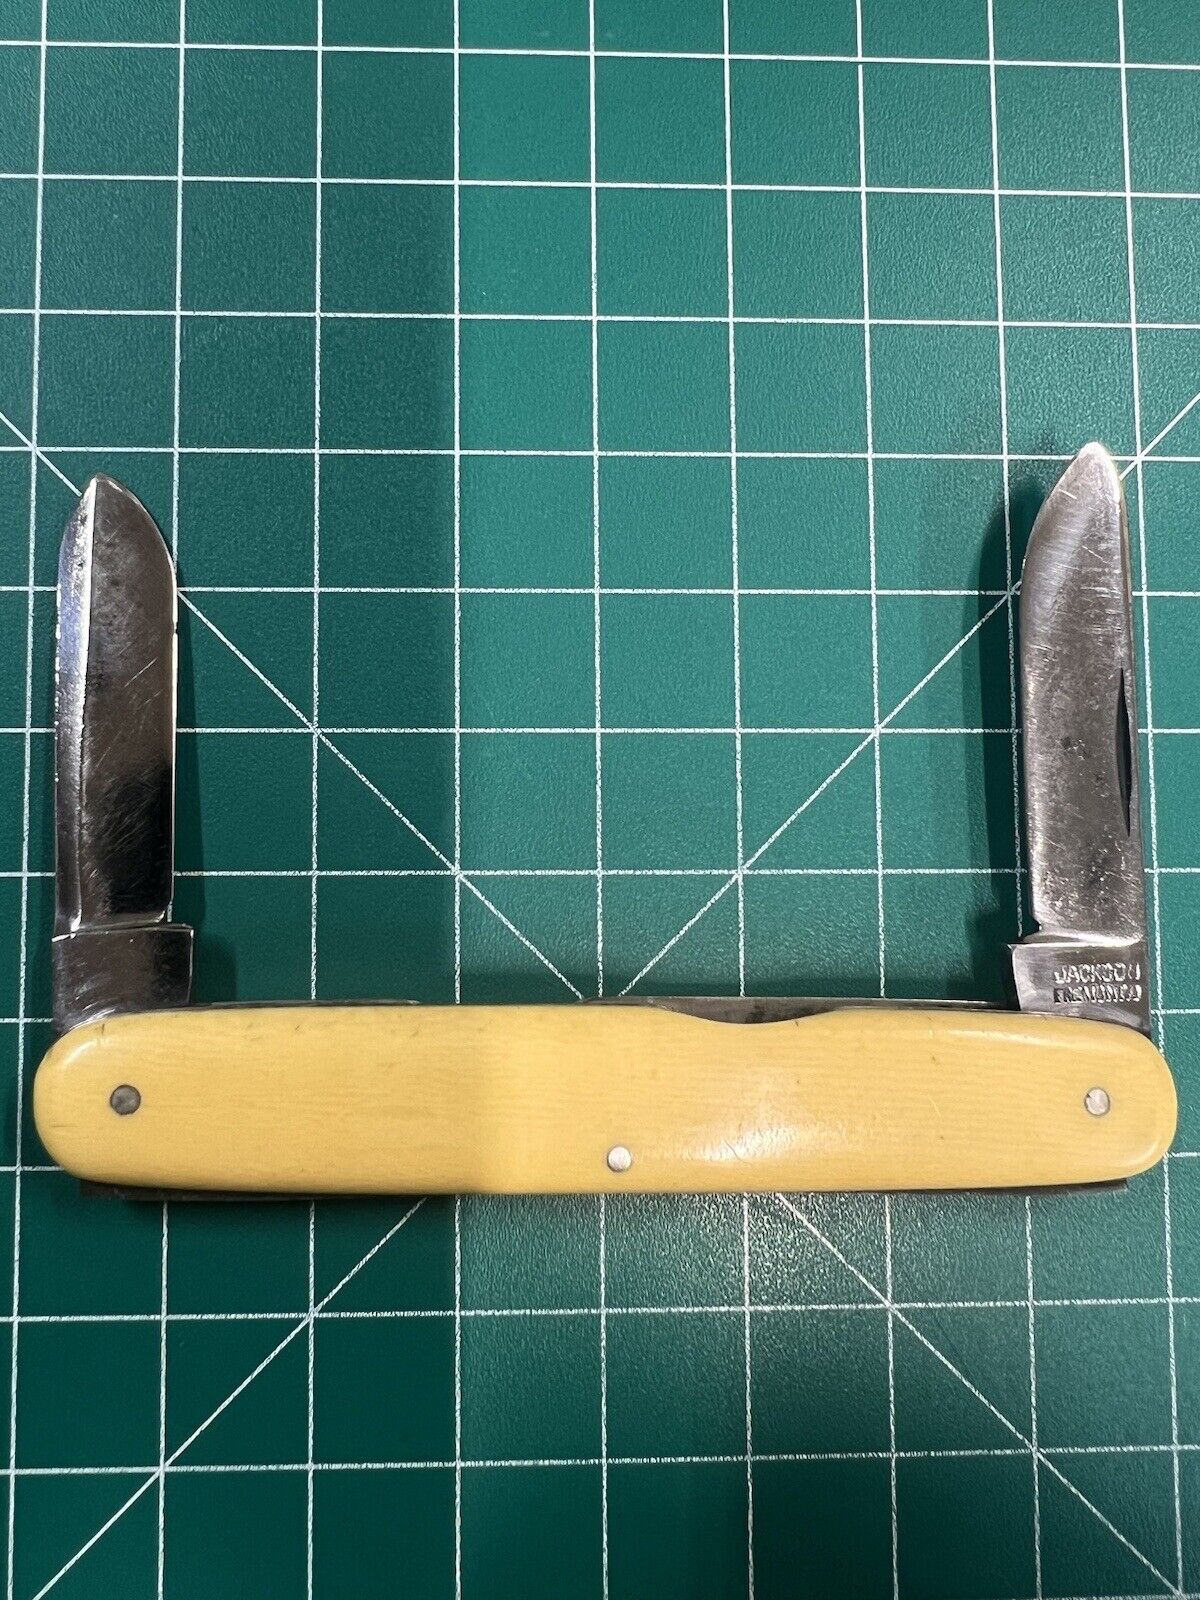 Vintage Jackson Knife &Shear Co. Pocket Knife Fremont Ohio 1900-1914 USA Antique